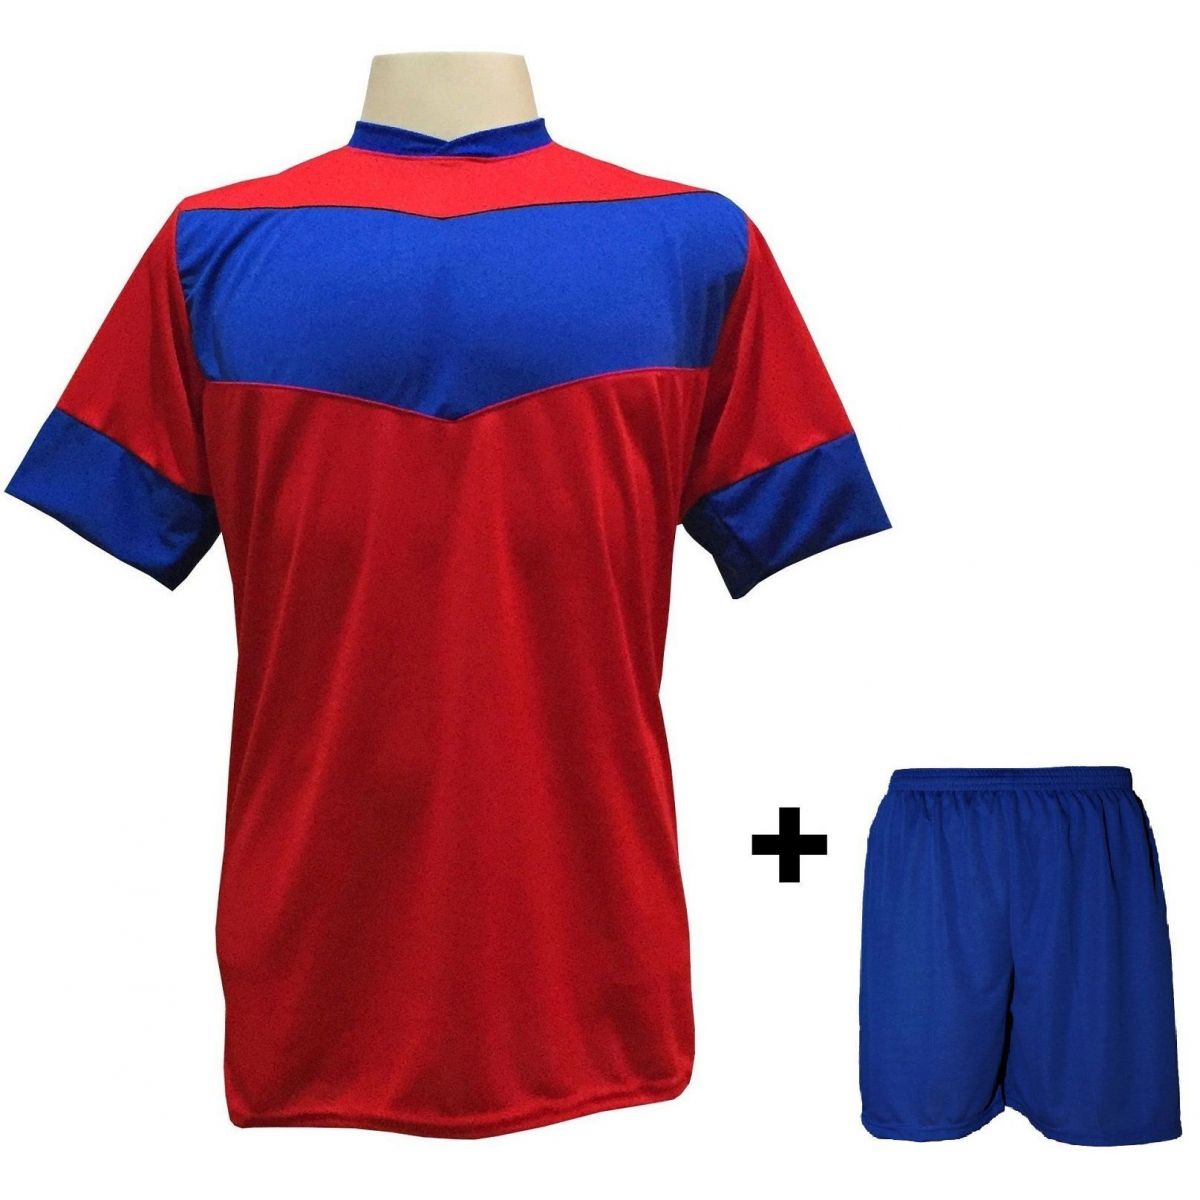 Uniforme Esportivo com 18 camisas modelo Columbus Vermelho/Royal + 18 calções modelo Madrid Royal + Brindes